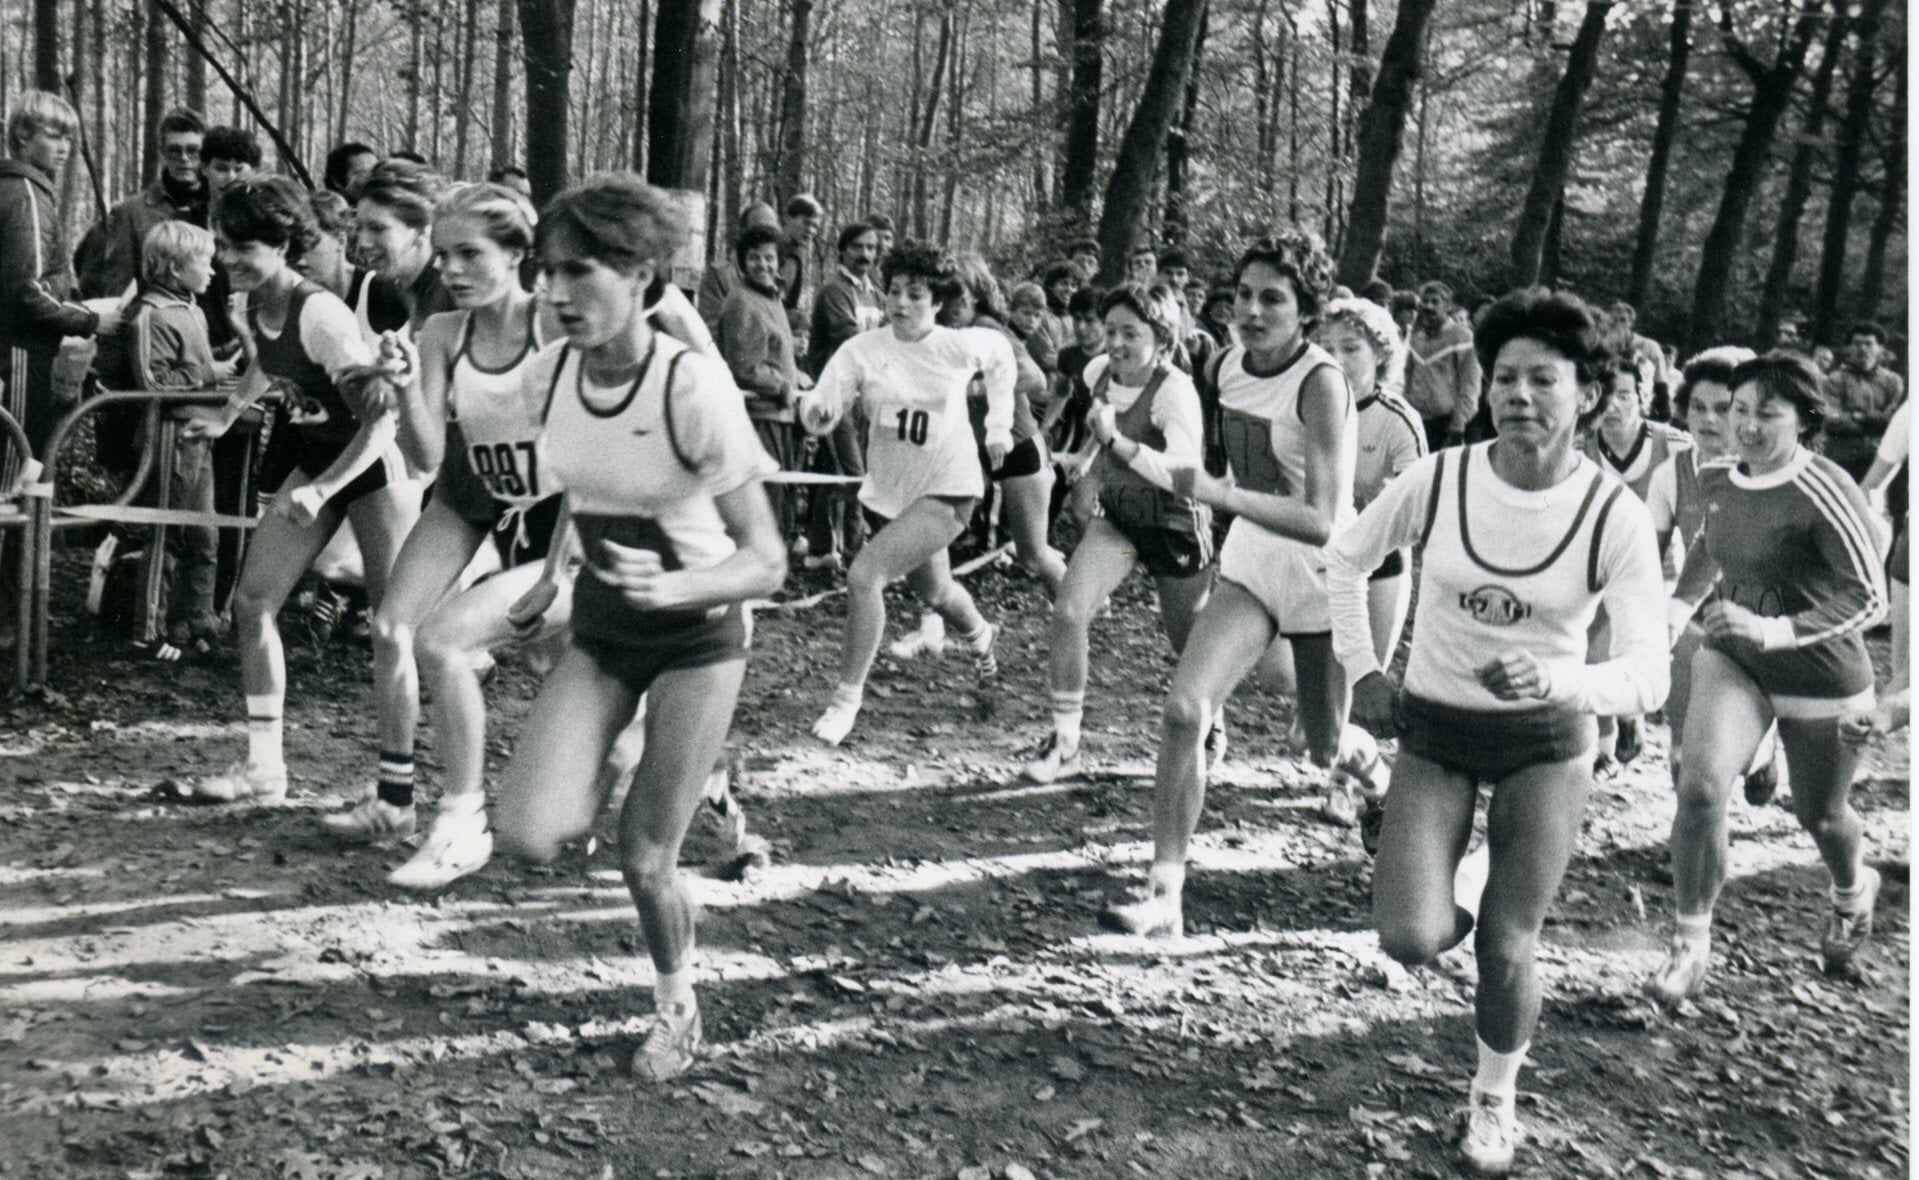 Dit jaar stond de 48e editie van de Sparrenbosloop op het programma. Op 30 oktober 1983, toen bovenstaande foto werd genomen, won oud-Marvelatlete Jacky Winkelman (voorgrond rechts) voor de derde maal op rij bij de vrouwen. (Archieffoto Brabants Centrum).